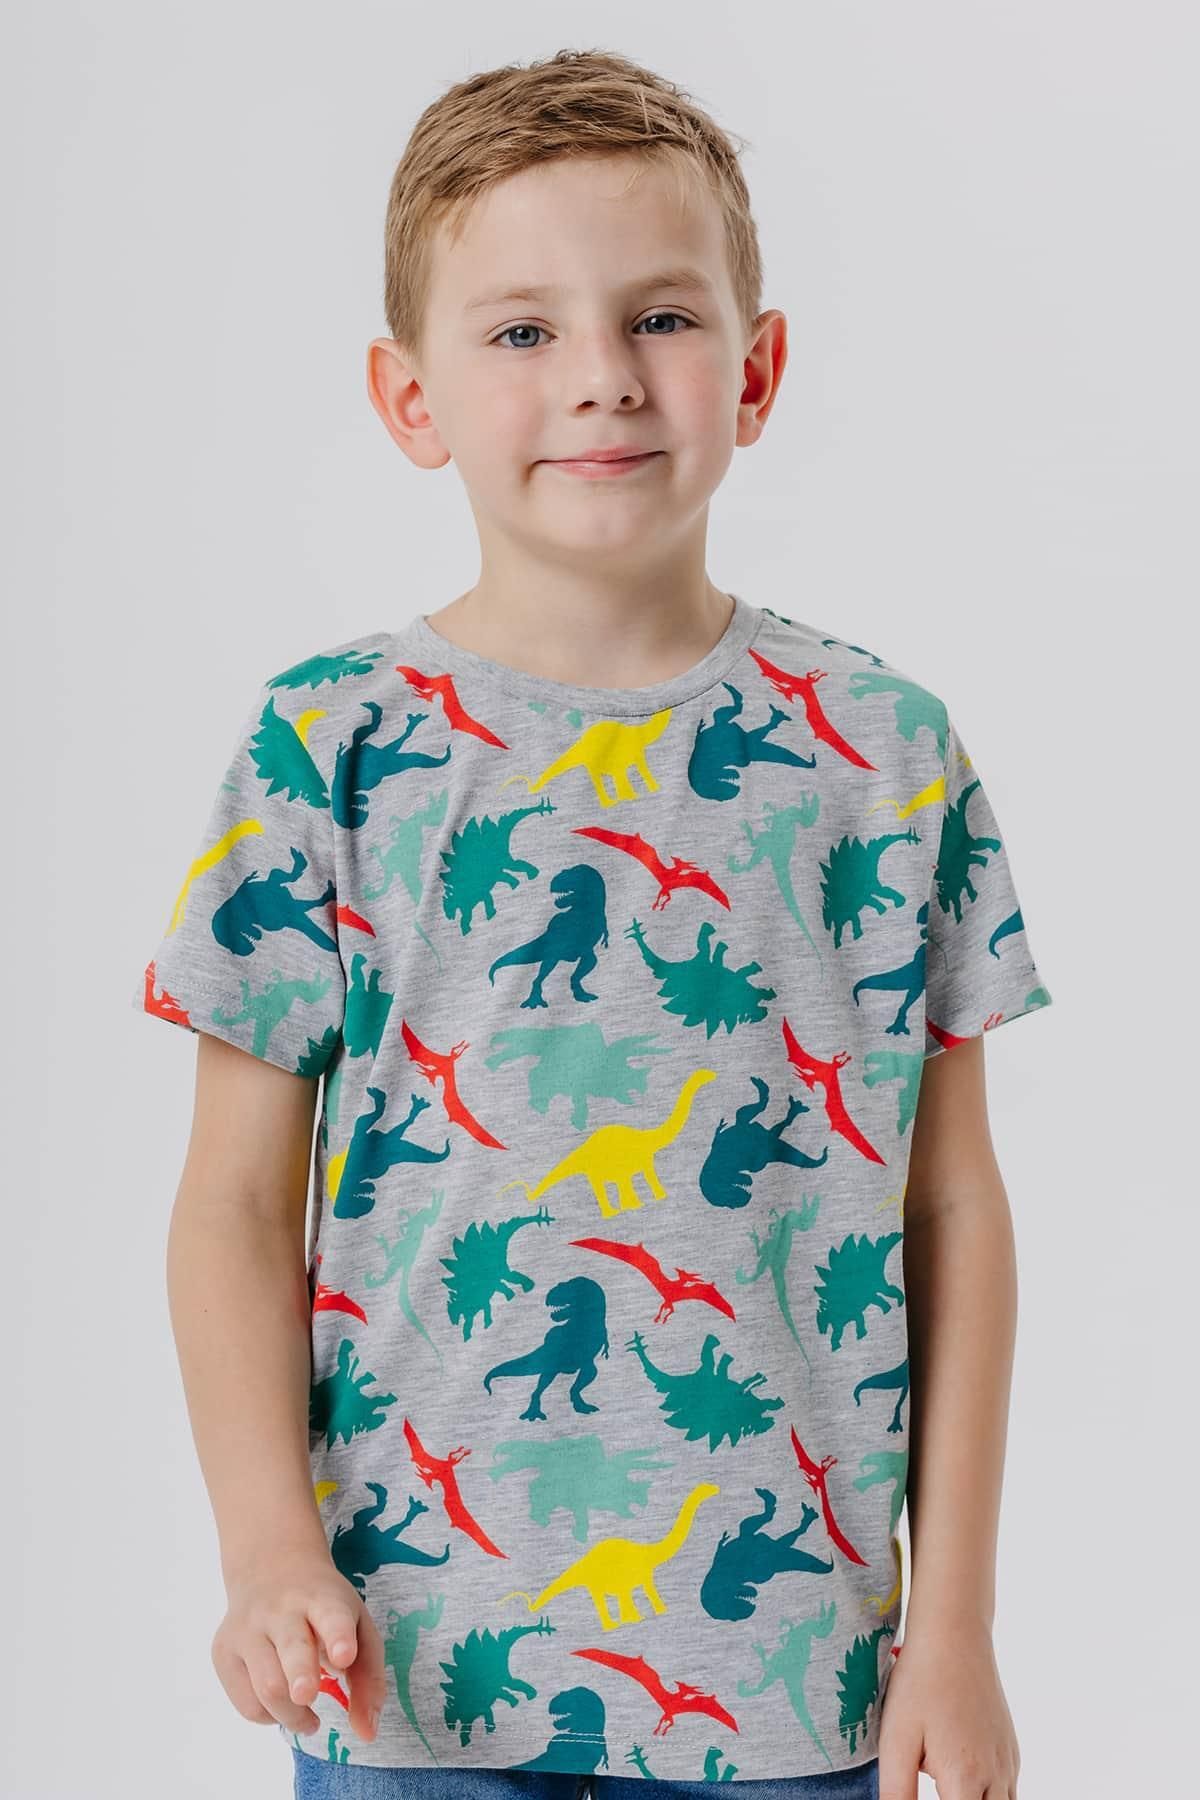 Breeze Erkek Çocuk Tişört Renkli Dinozor Baskılı 5-9 Yaş, Gri Melanj